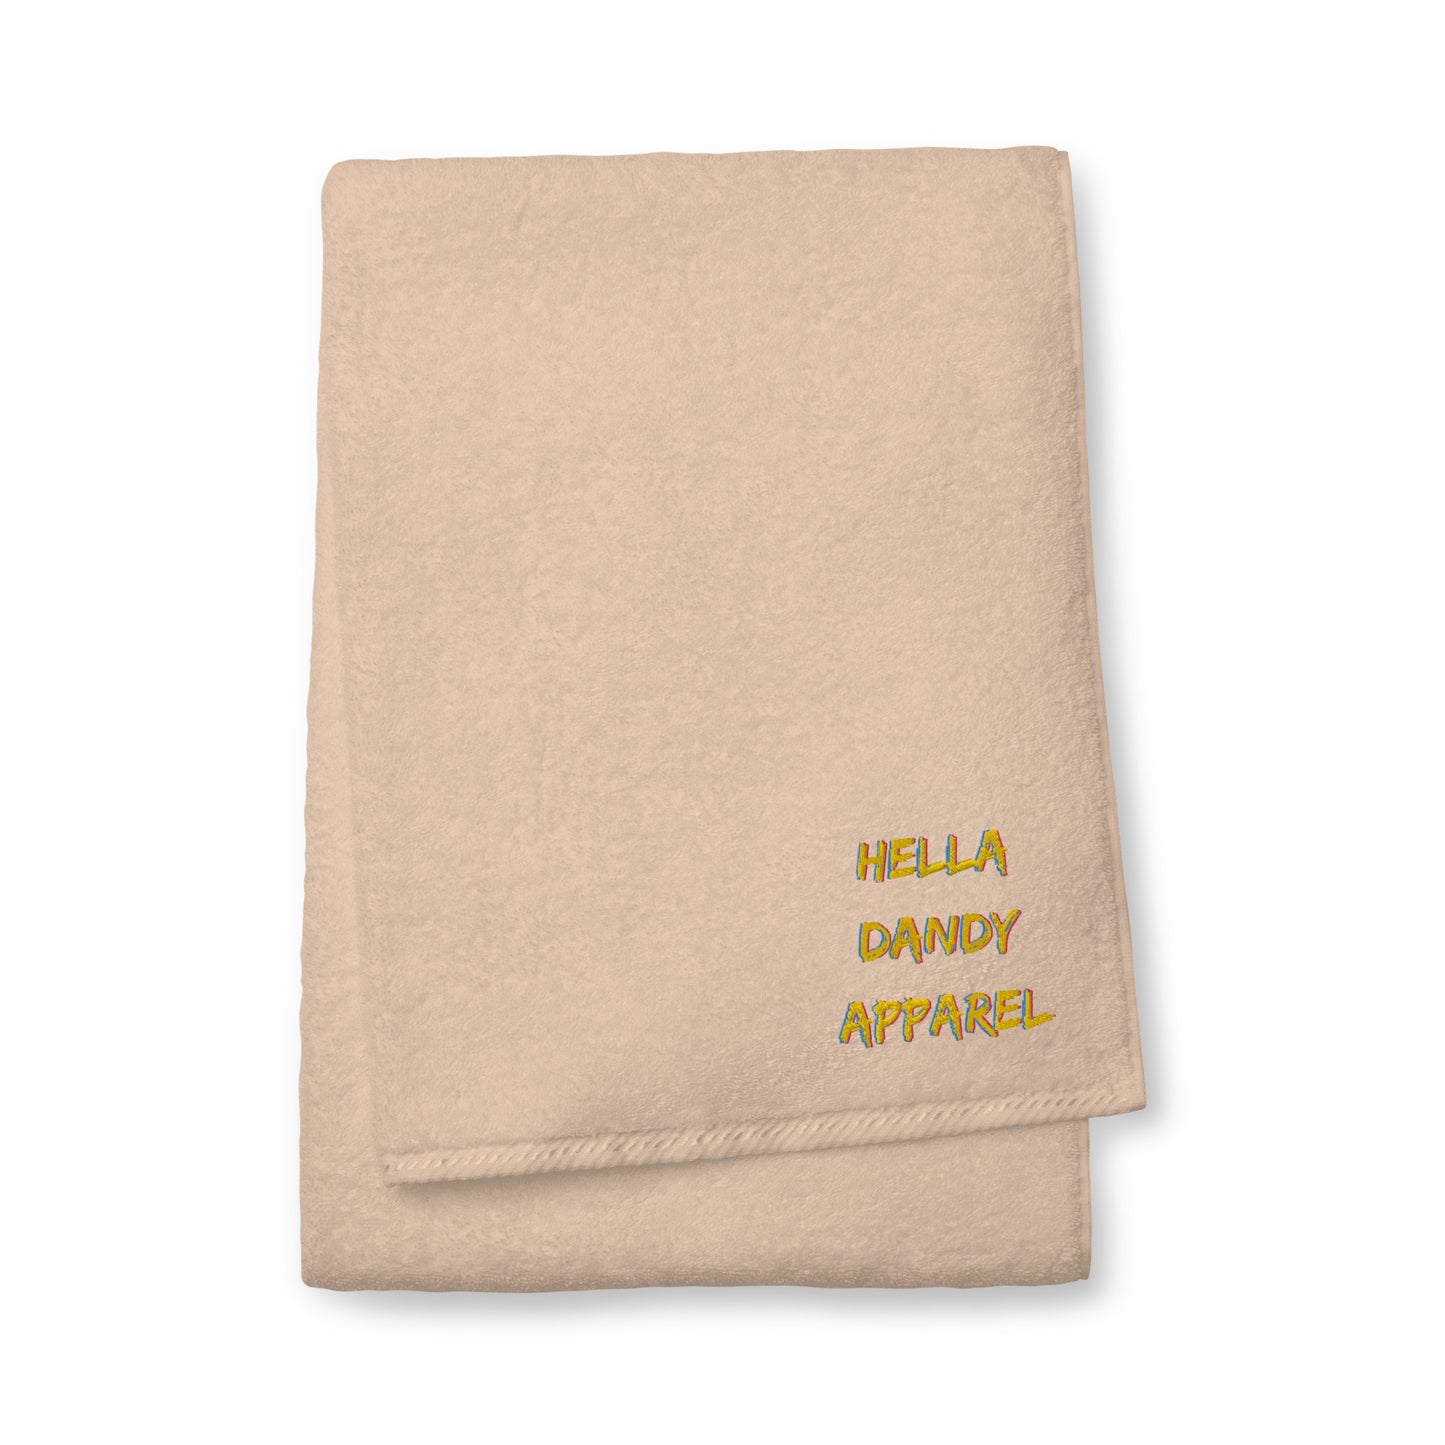 Hella Dandy Apparel Turkish cotton towel